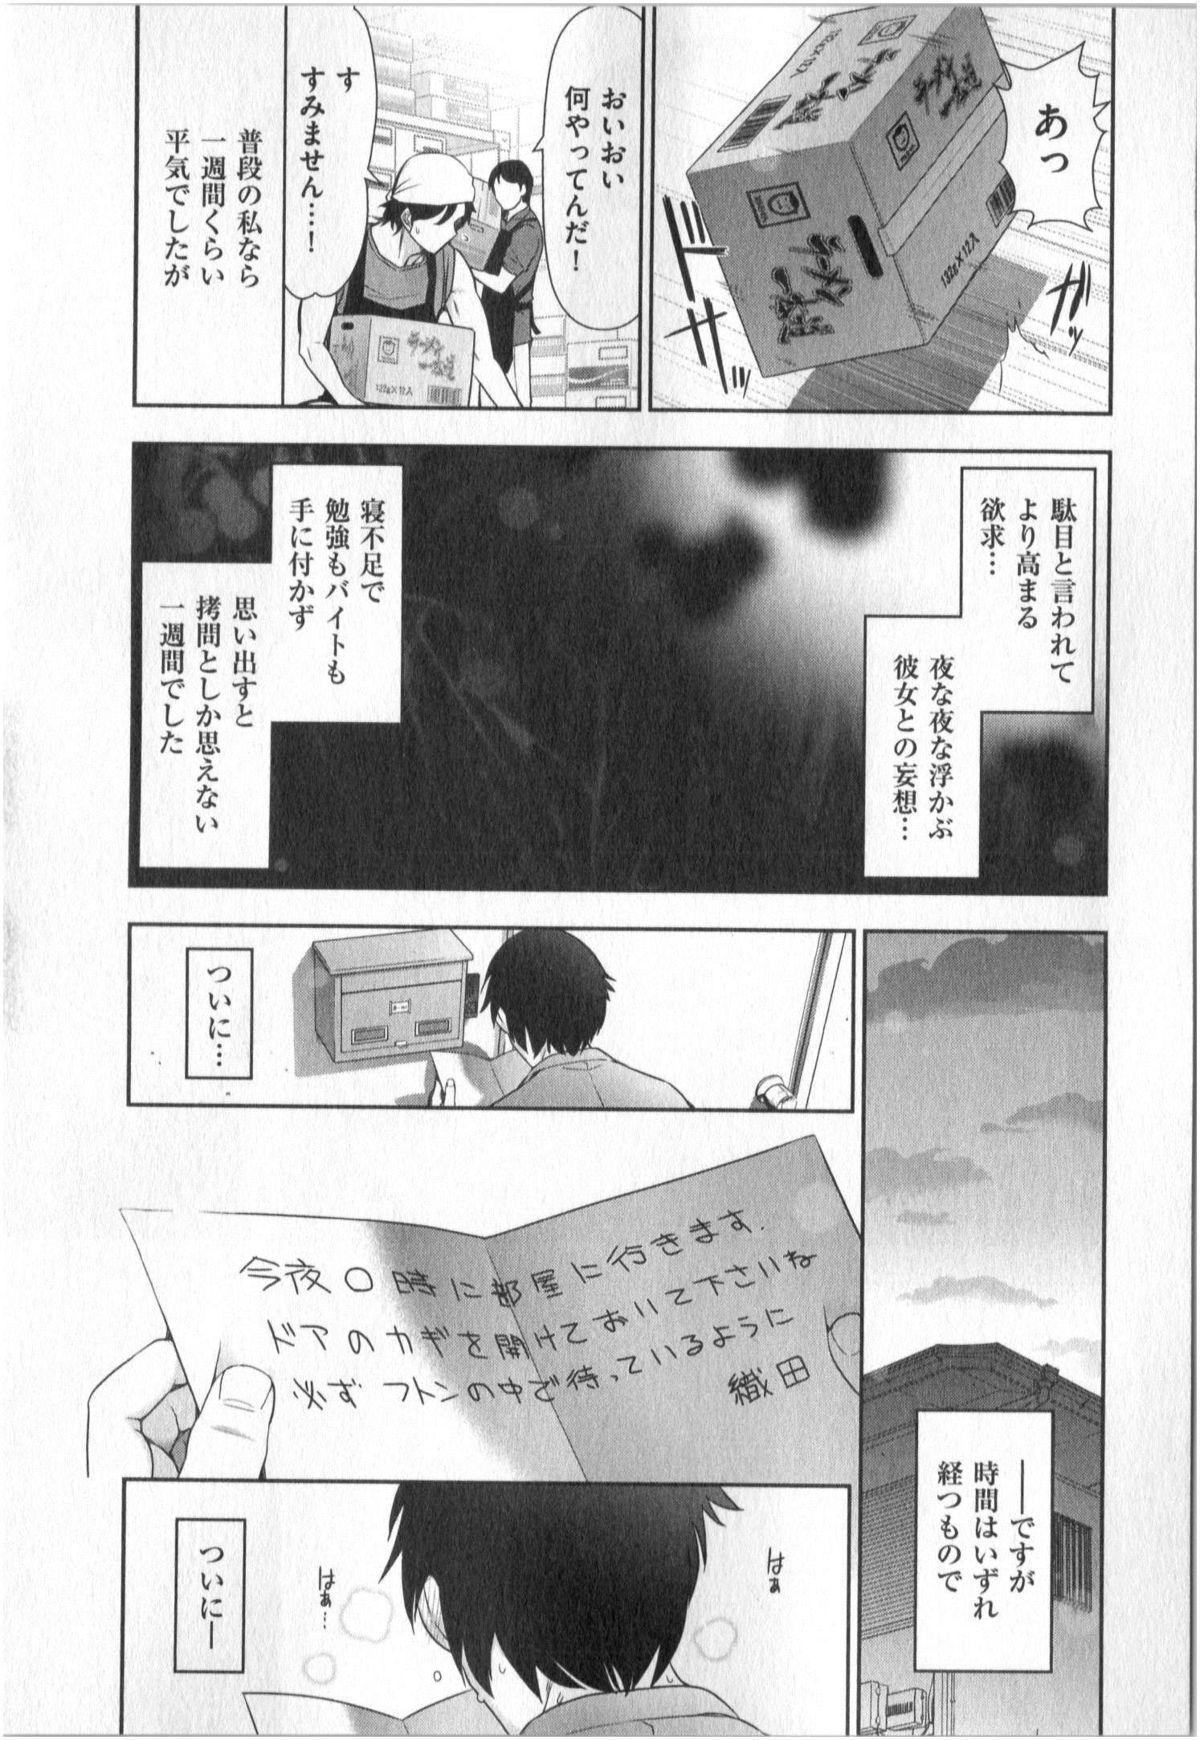 Yonimo Ecchi na Toshidensetsu vol. 01 34